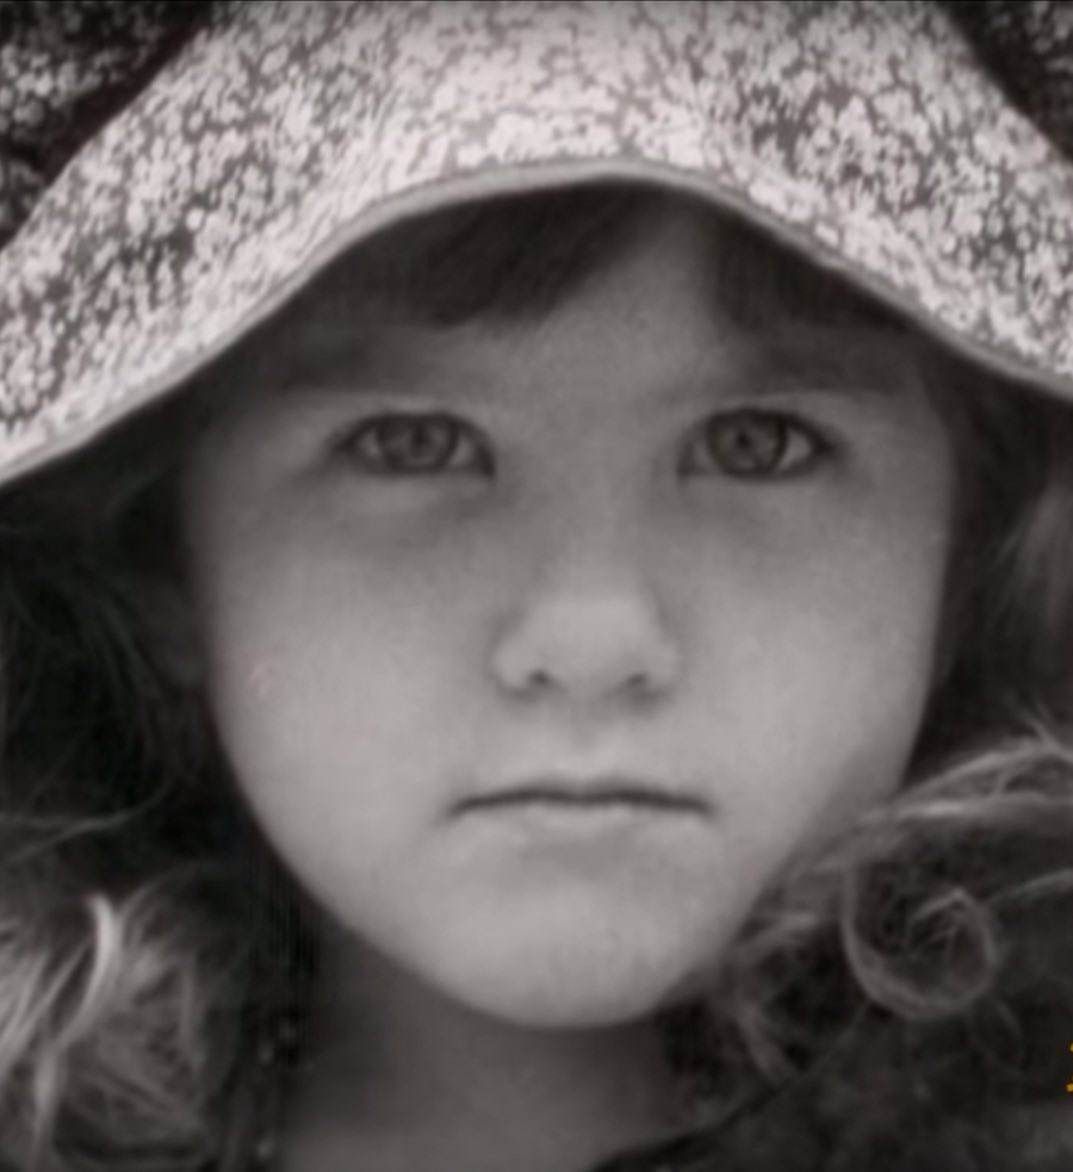 Jennifer Aniston jako mała dziewczynka